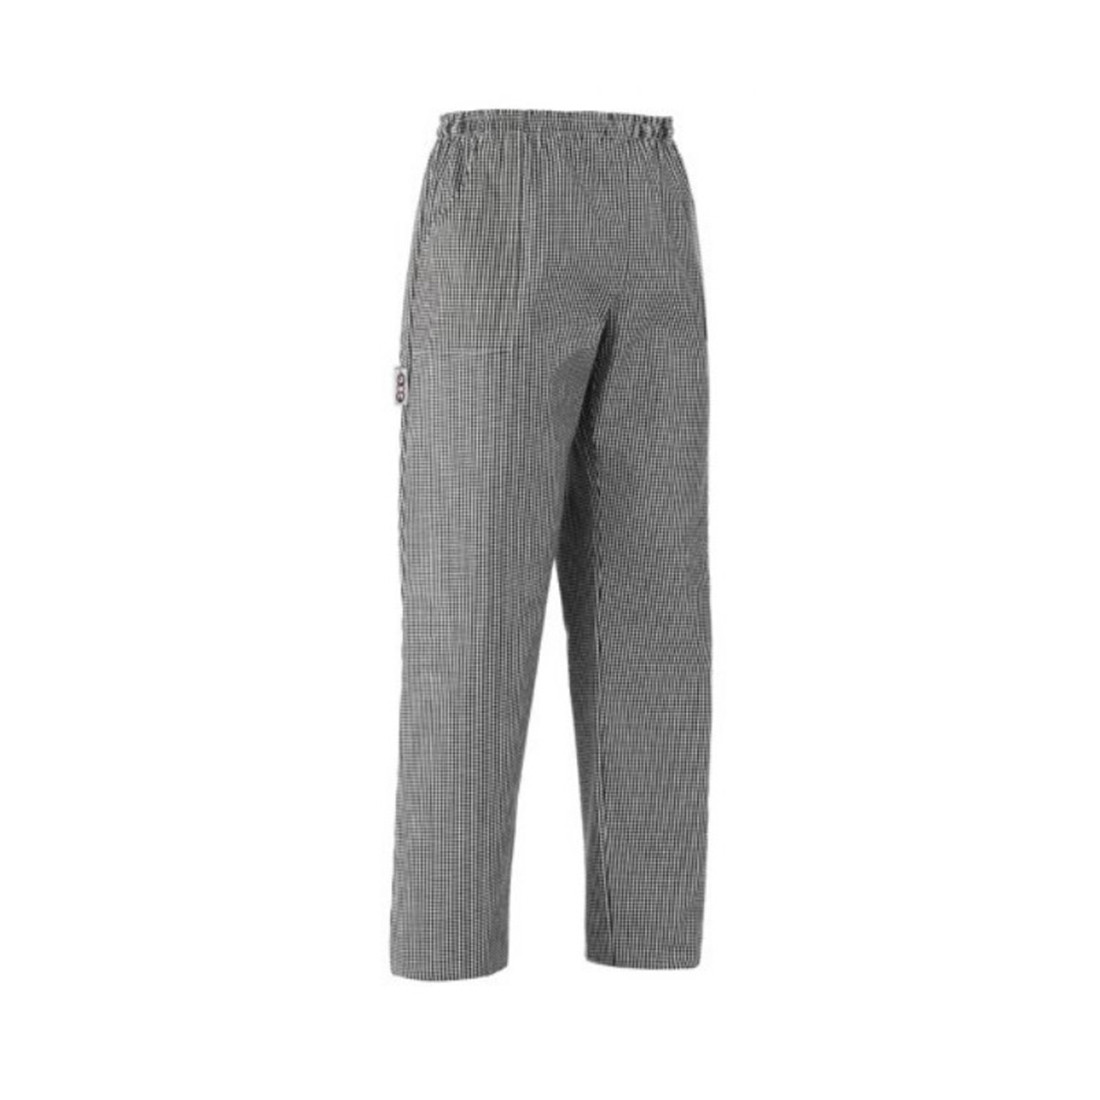 Pantalon Coulisse Pocket, 65% polyester/35% coton - Les vêtements de protection